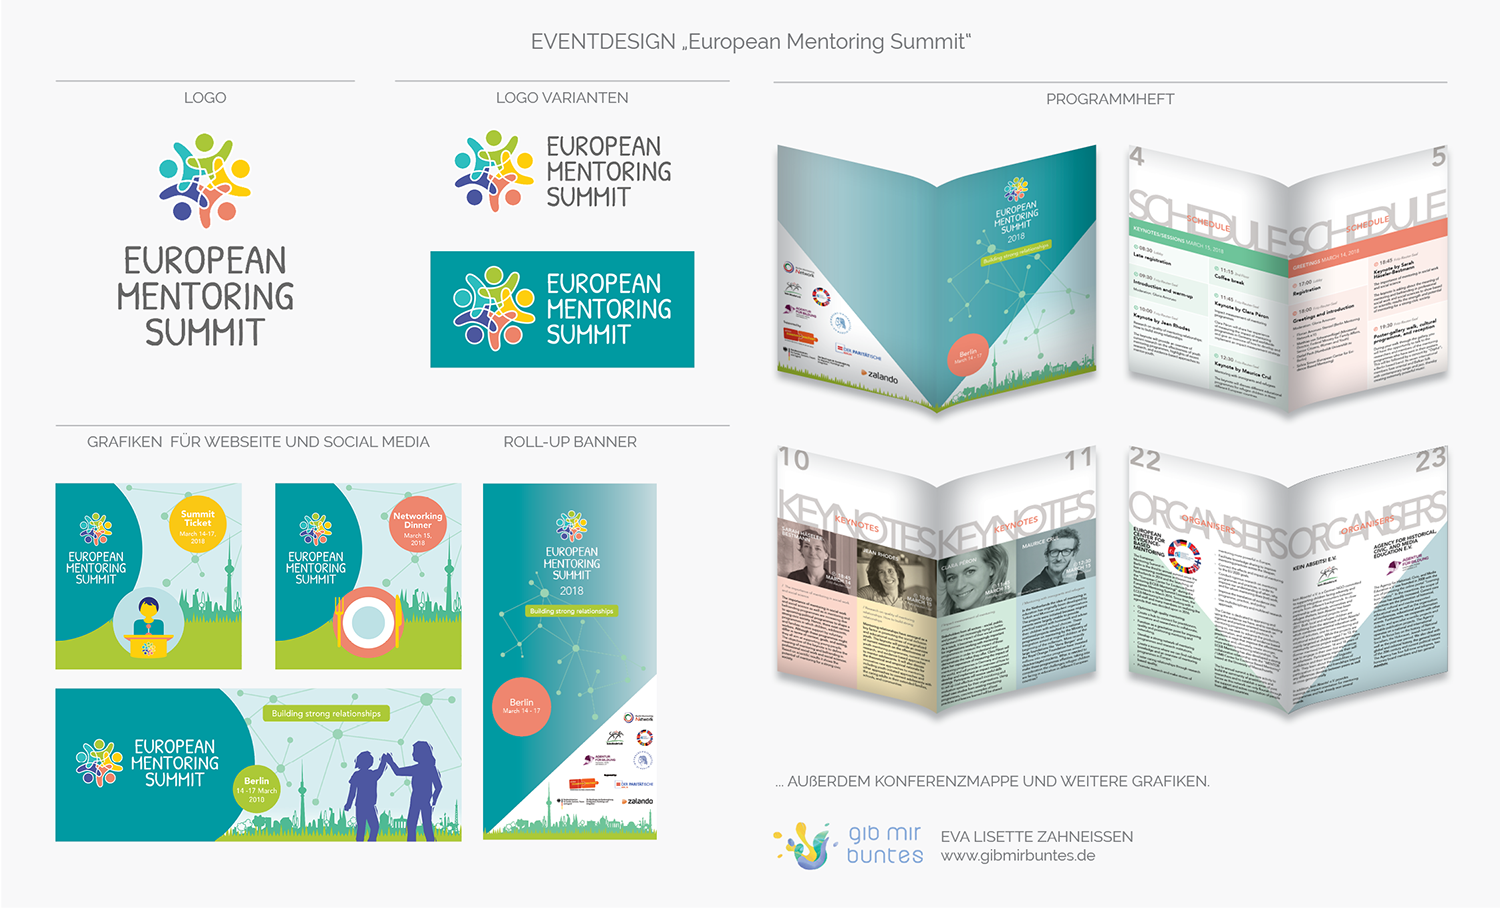 Design für das European Mentoring Summit 2018